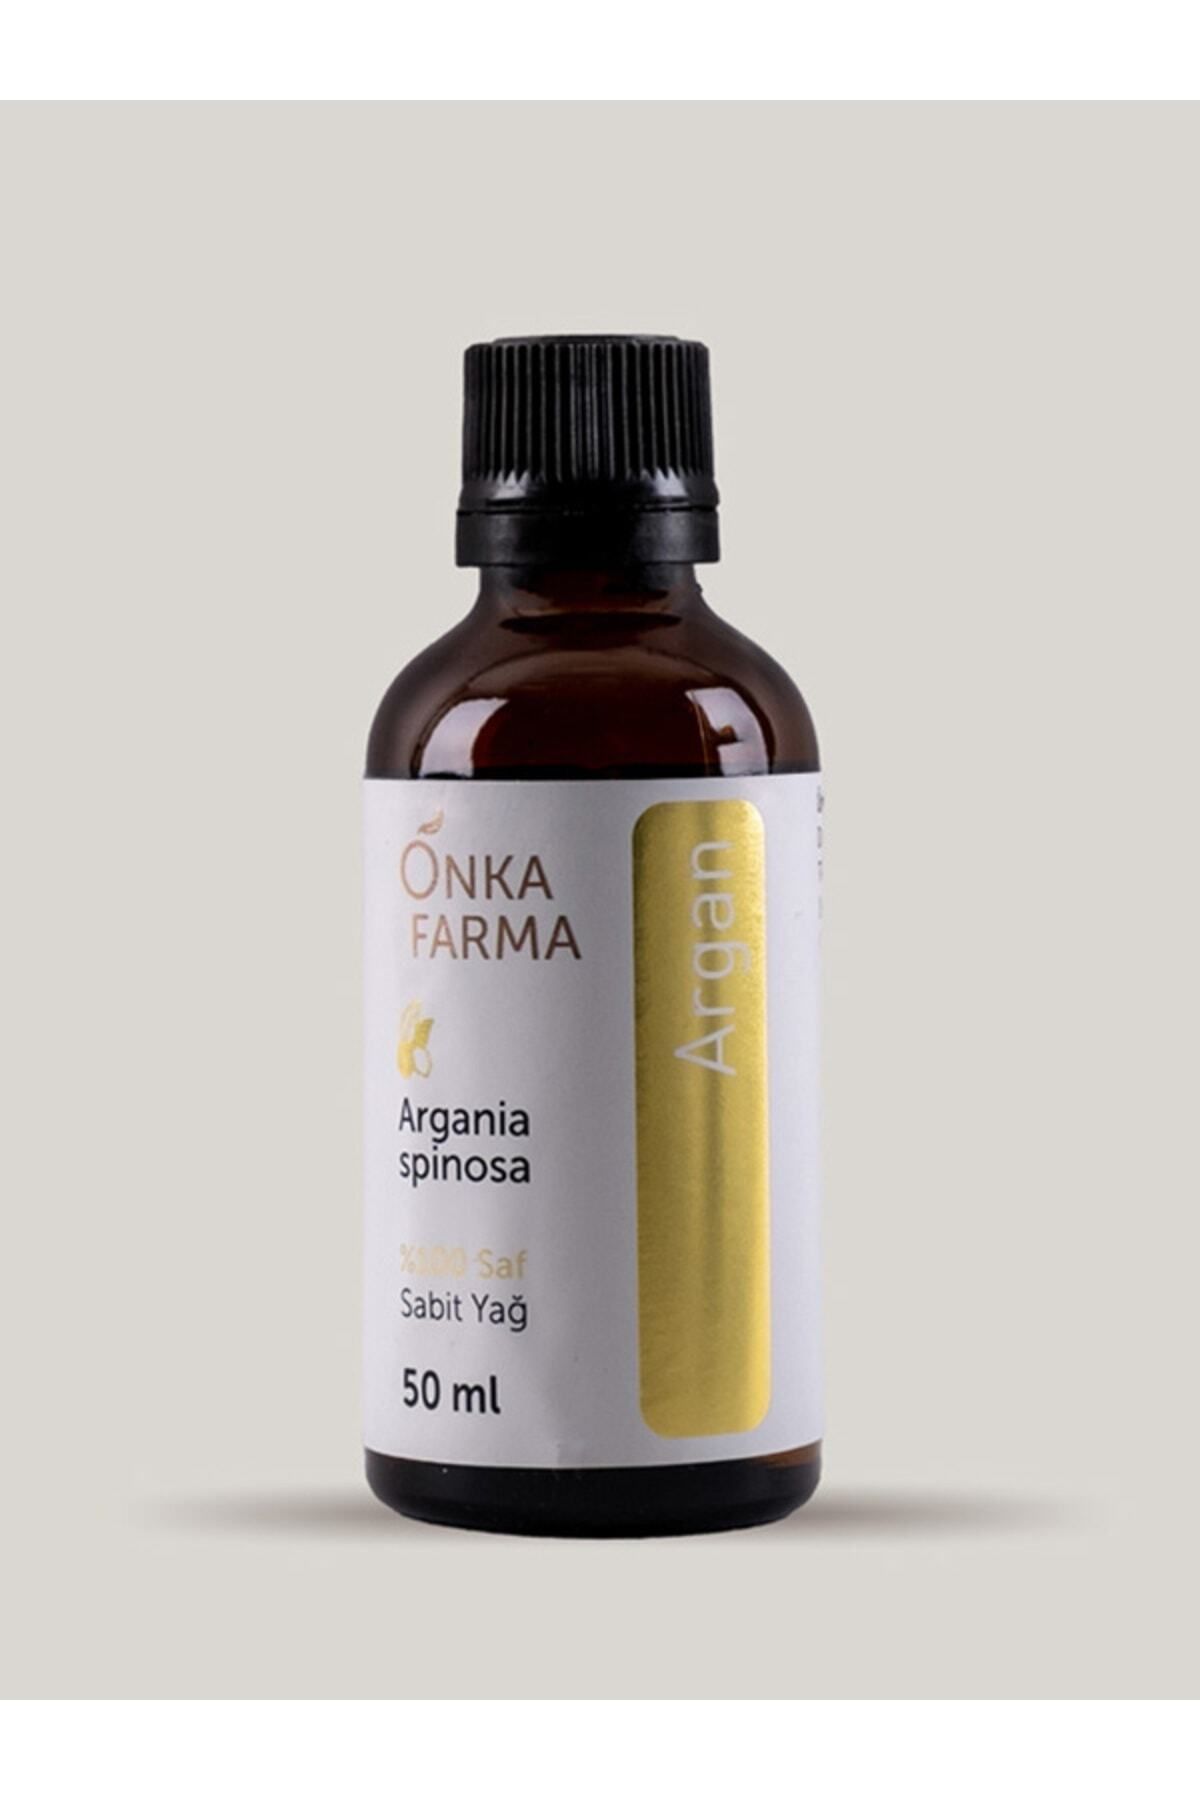 OnkaFarma Onka Farma %100 Saf Argan Yağı - 50 ml